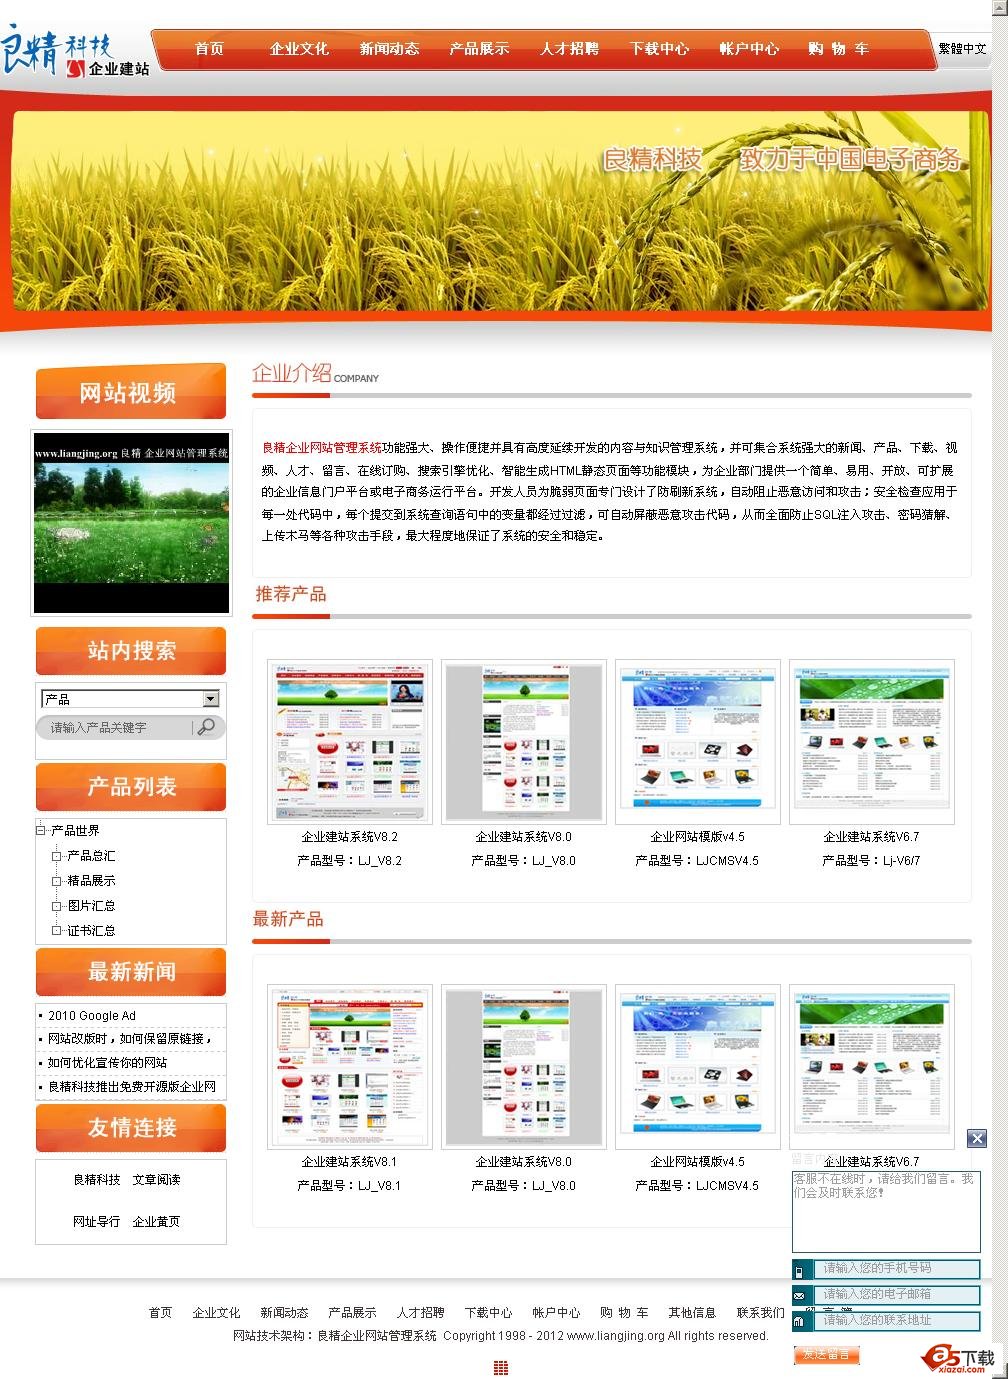 良精中文企业网站管理系统